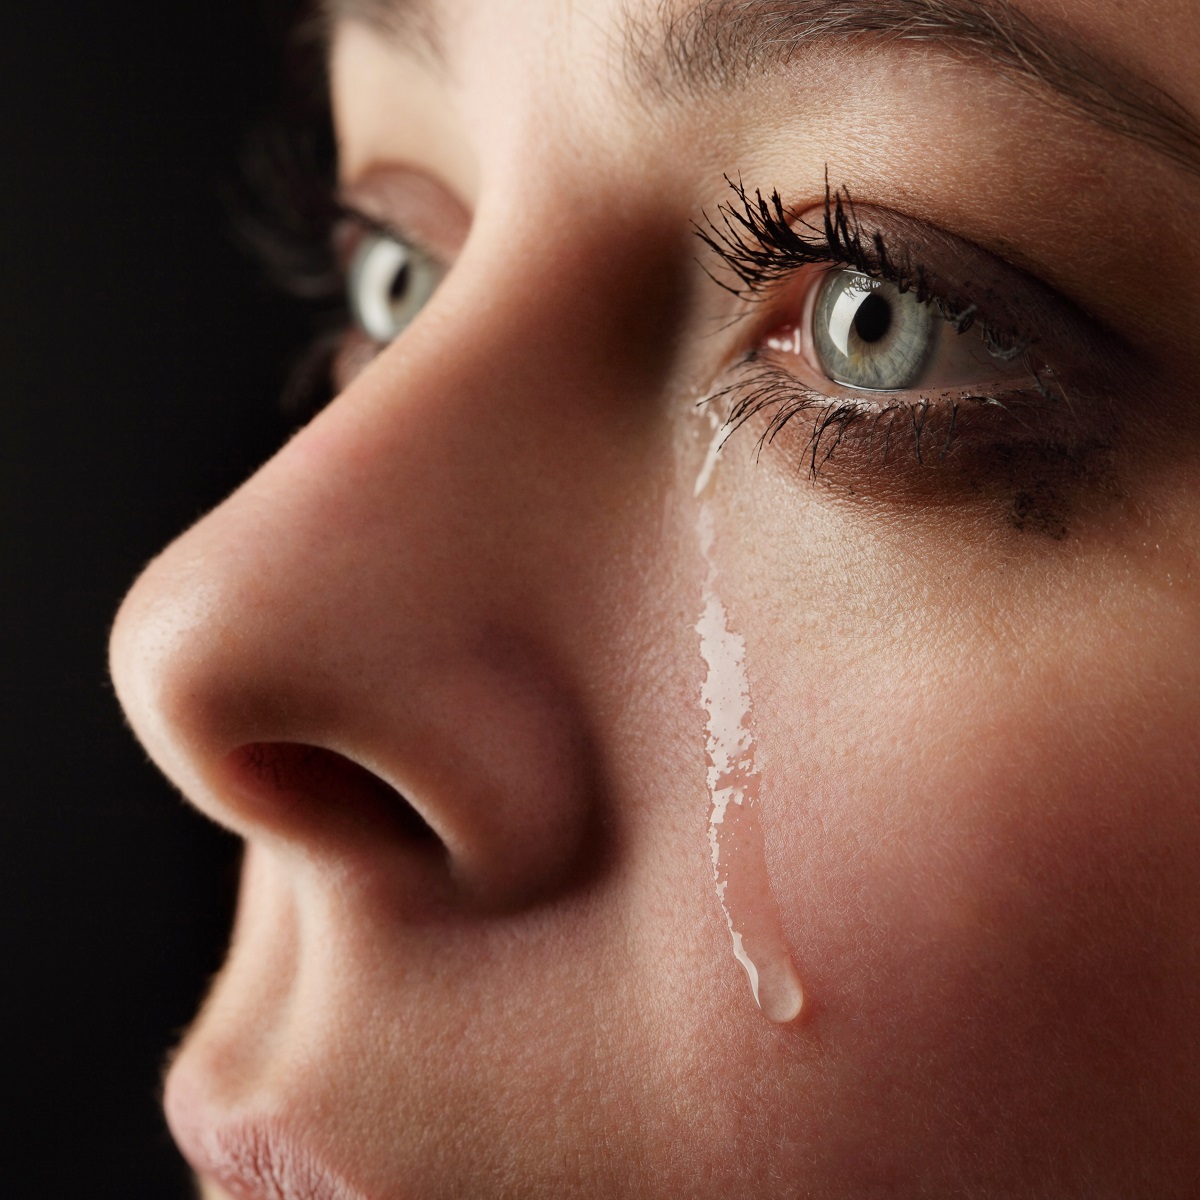 كيف يمكن أن يكون البكاء مفيدًا؟